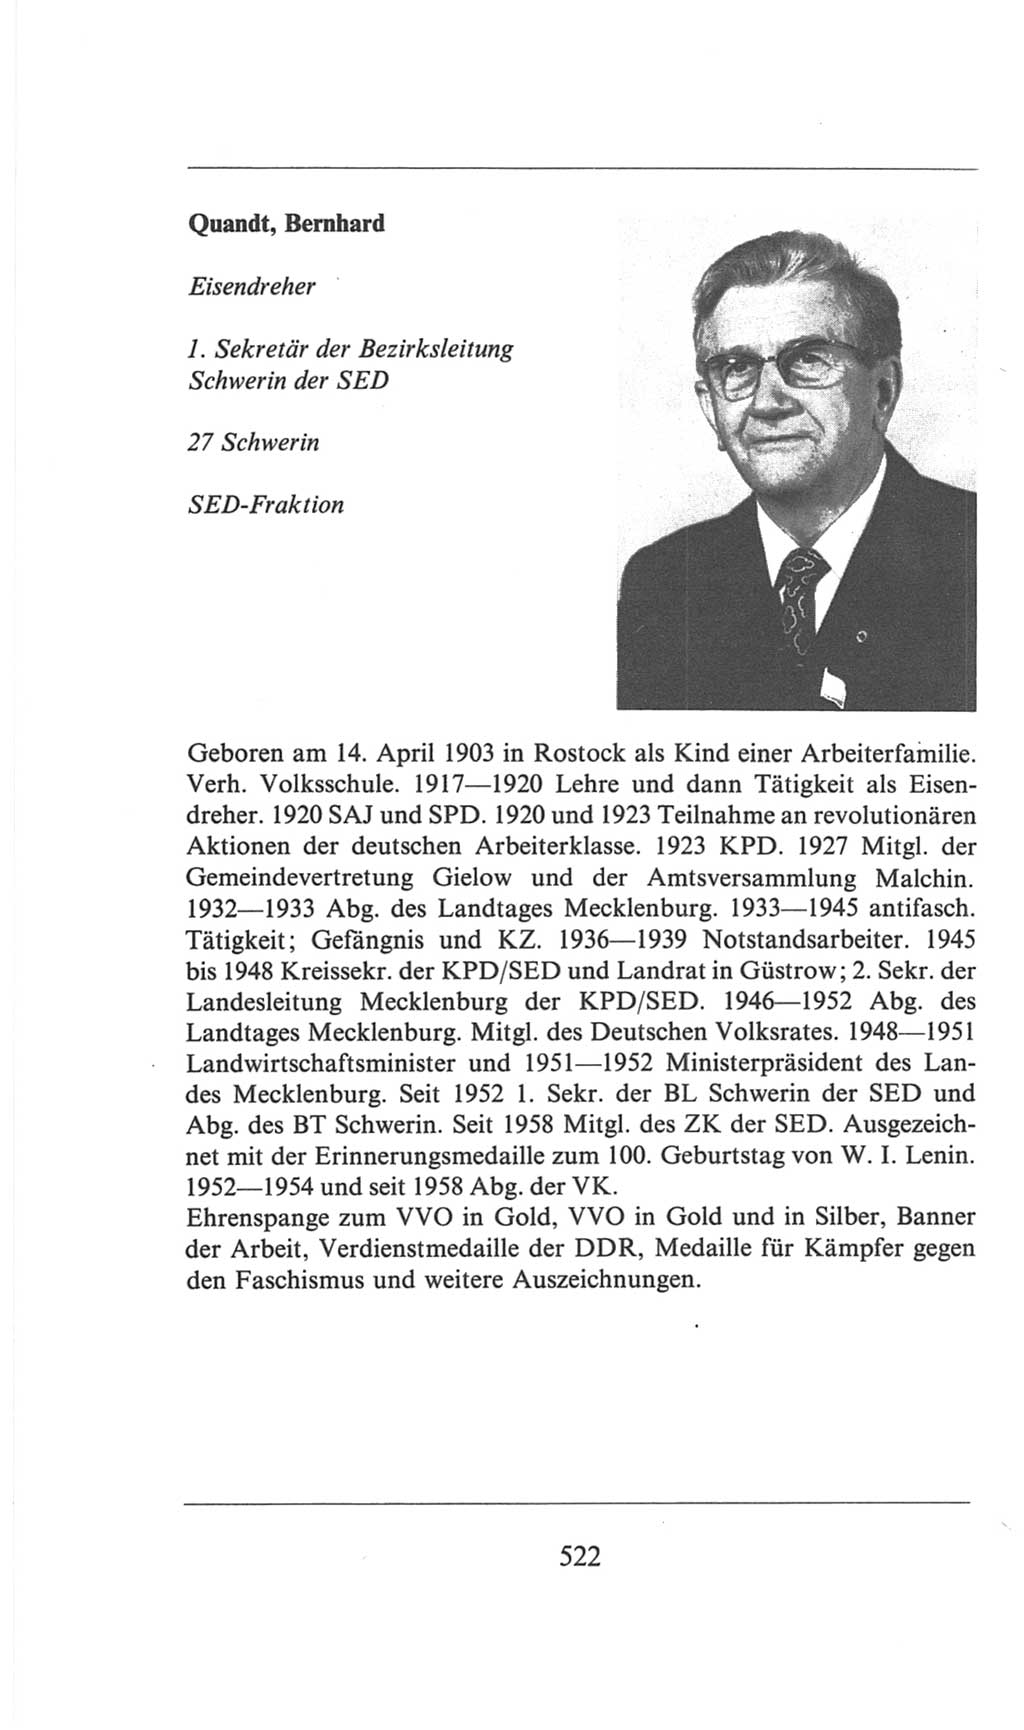 Volkskammer (VK) der Deutschen Demokratischen Republik (DDR), 6. Wahlperiode 1971-1976, Seite 522 (VK. DDR 6. WP. 1971-1976, S. 522)